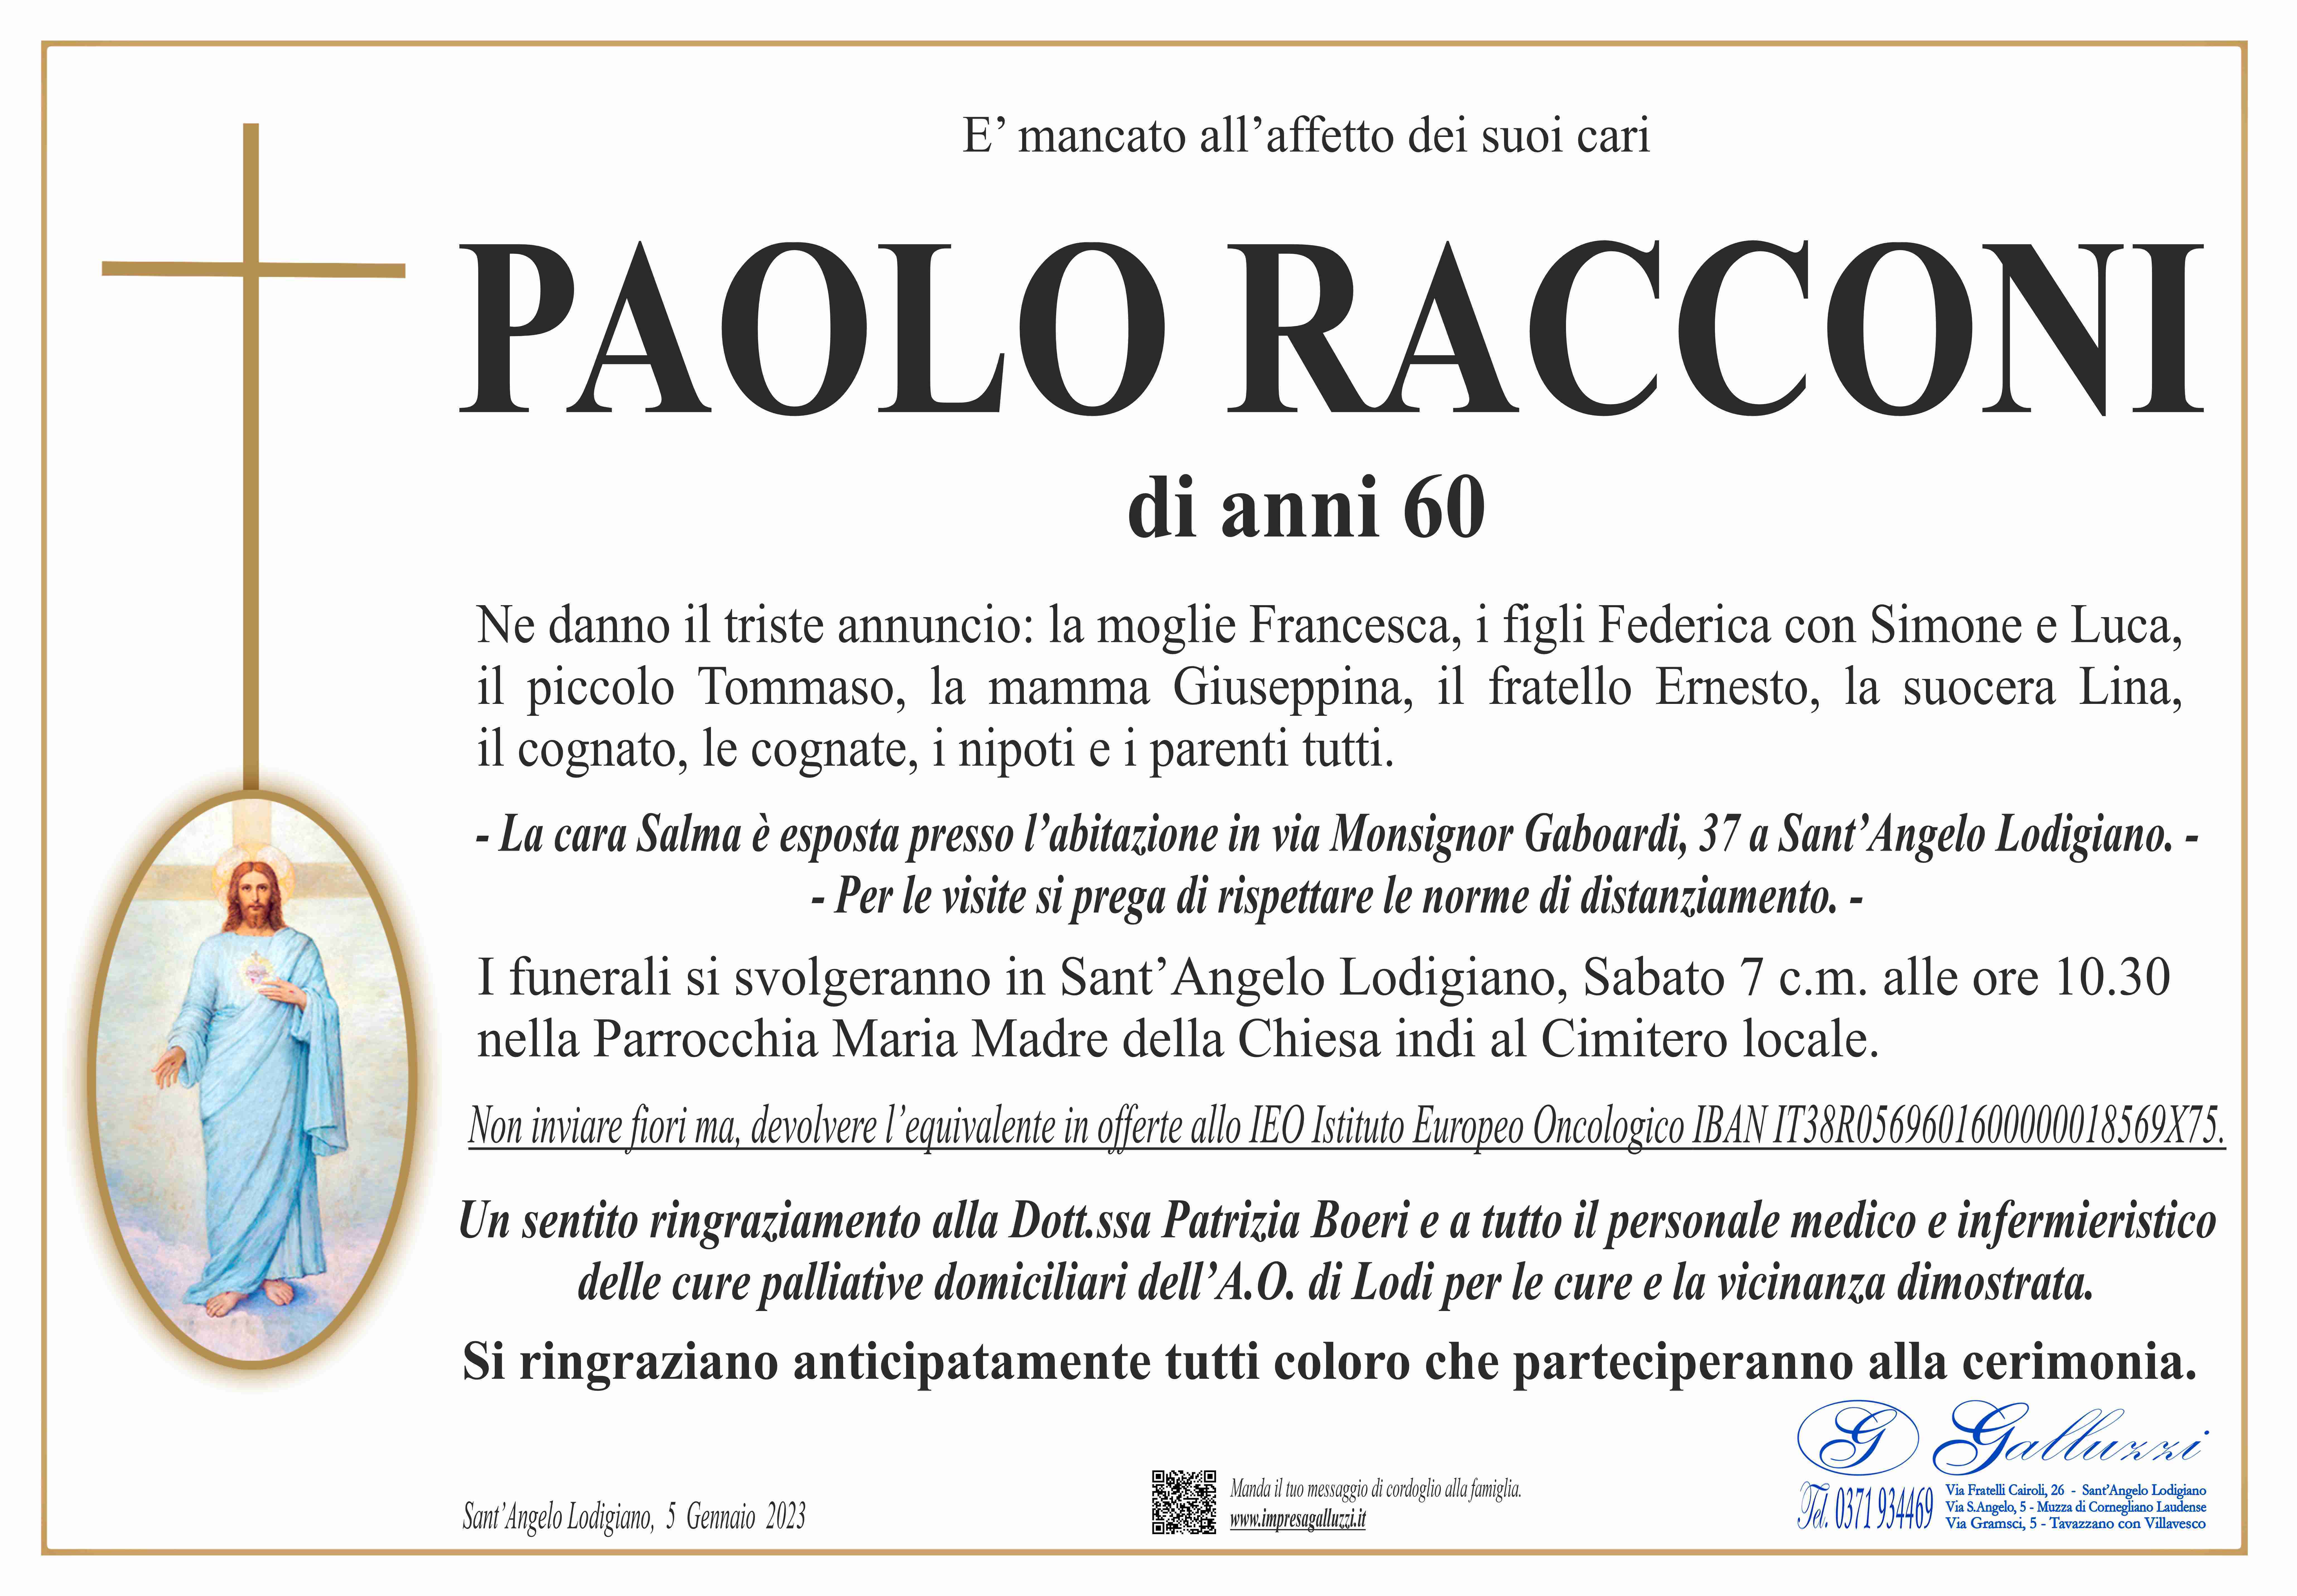 Paolo Racconi